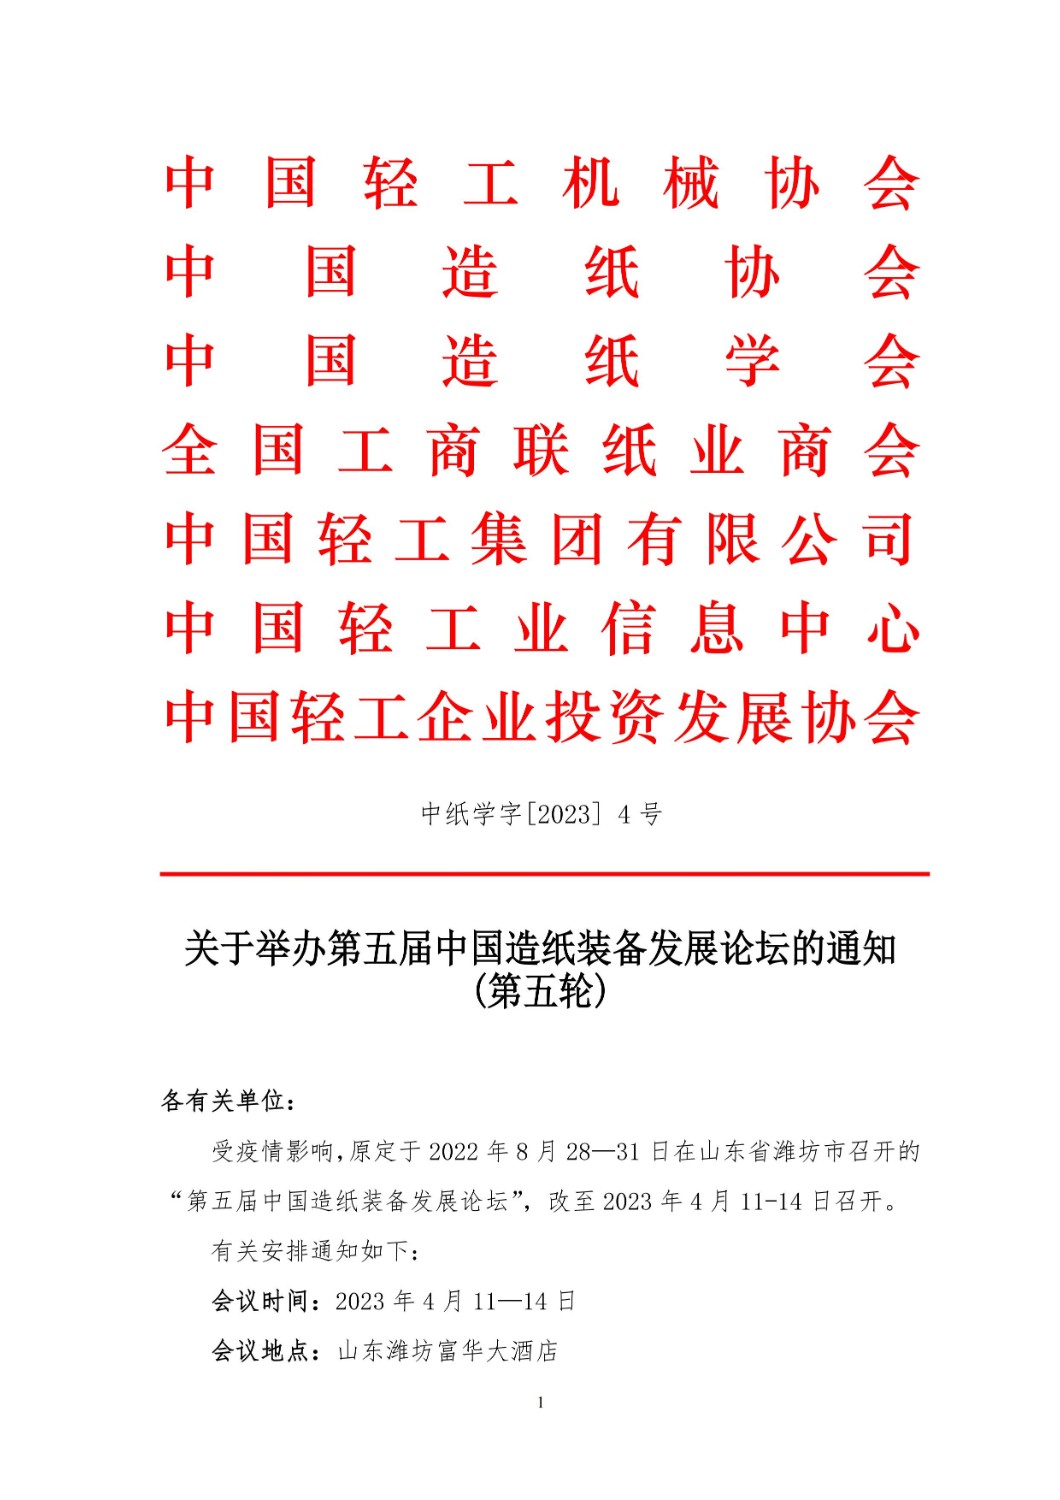 【重要】关于举办第五届中国造纸装备发展论坛的通知